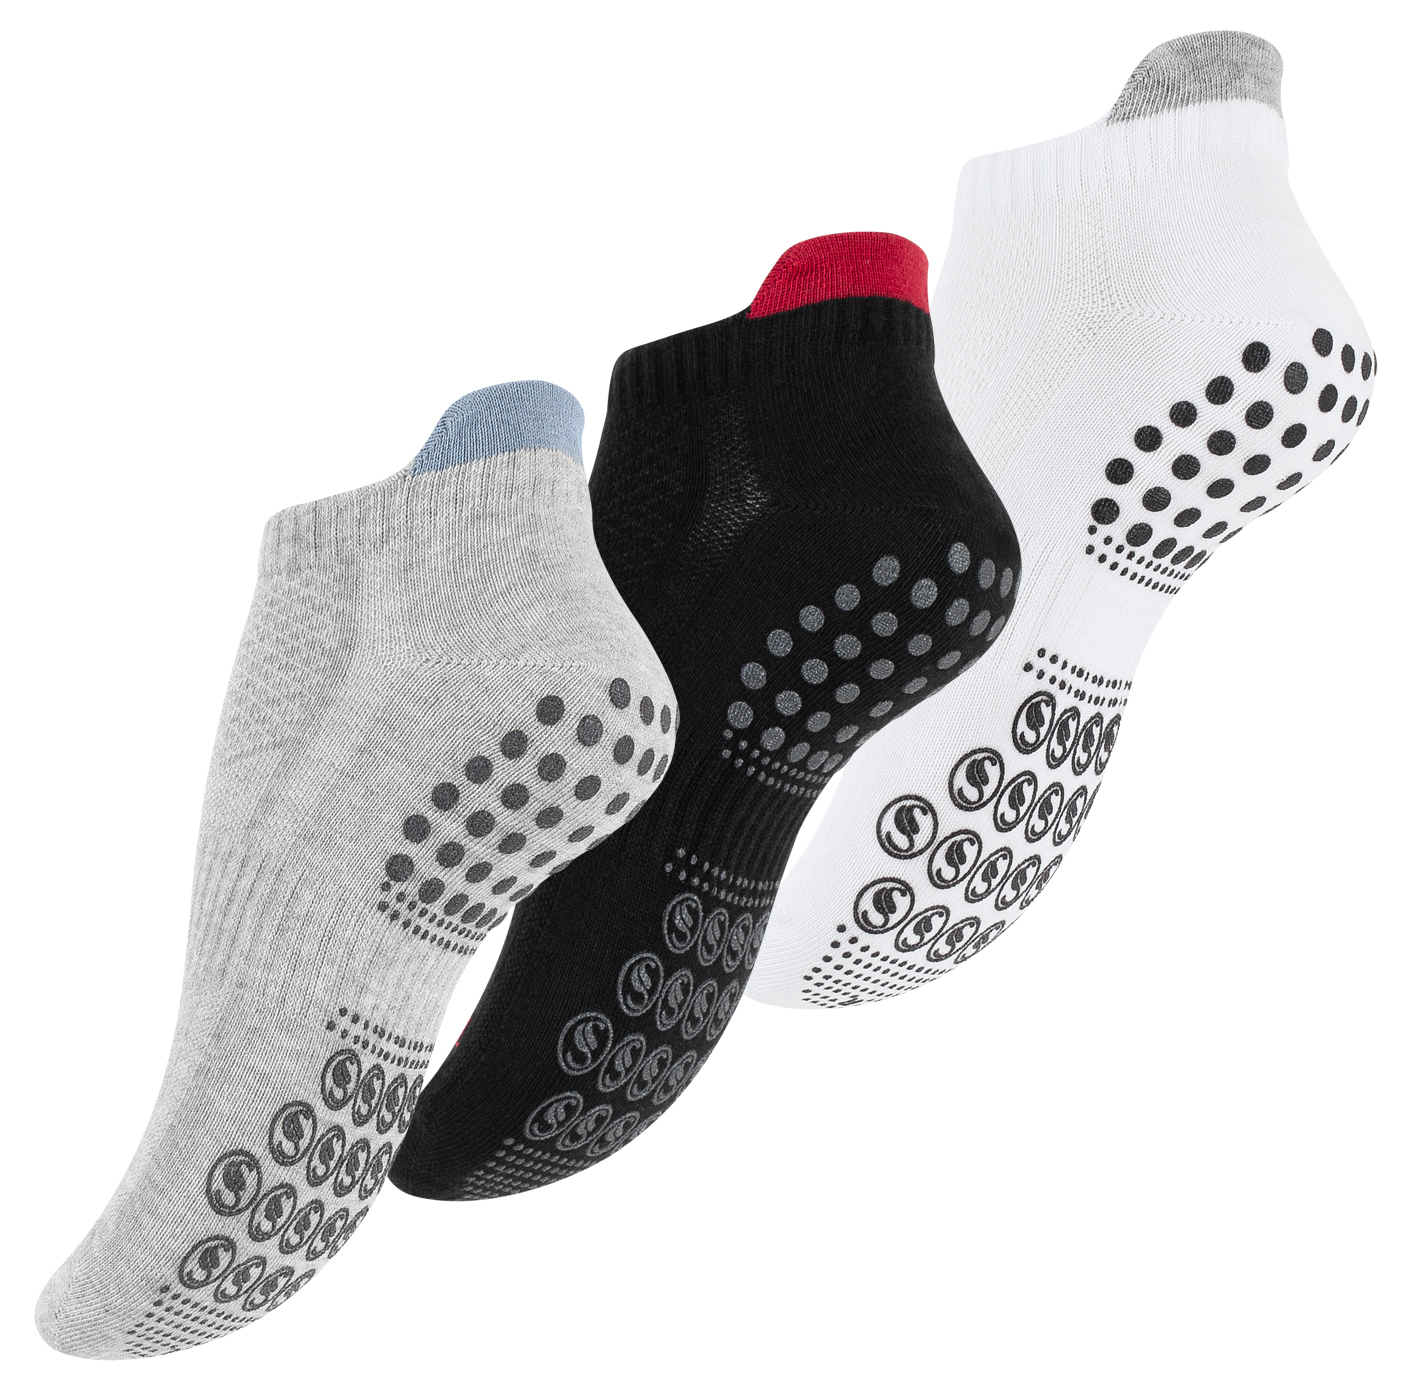 Anti-Rutsch Socken für Yoga & Fitness